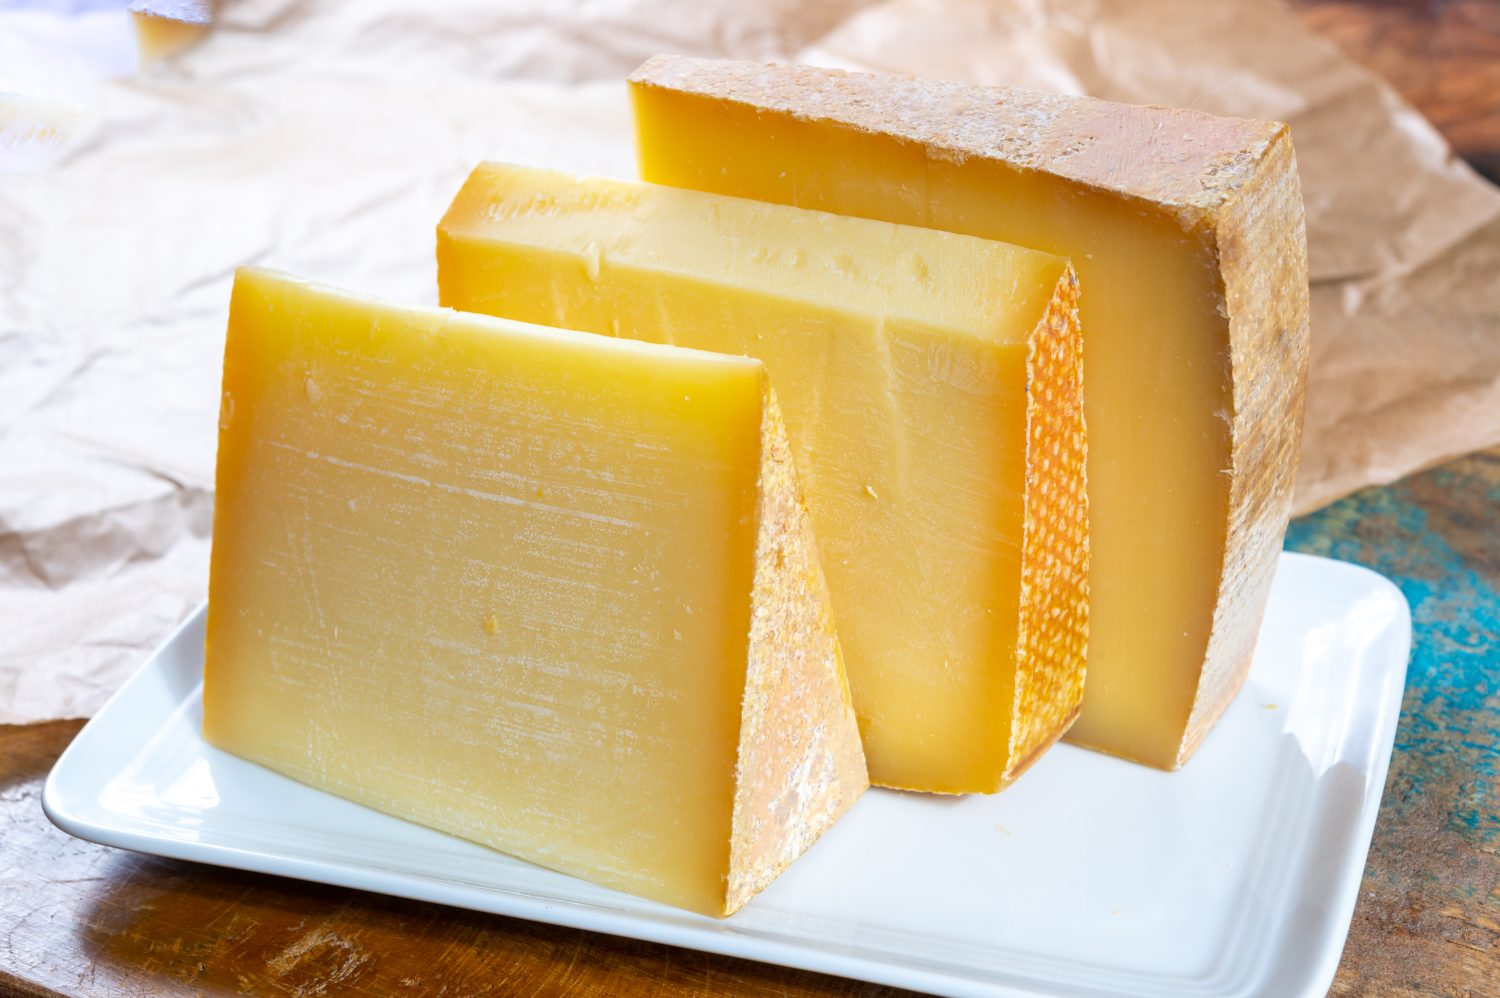 Raccolta di formaggi, comte francese e formaggi groviera svizzeri da vicino